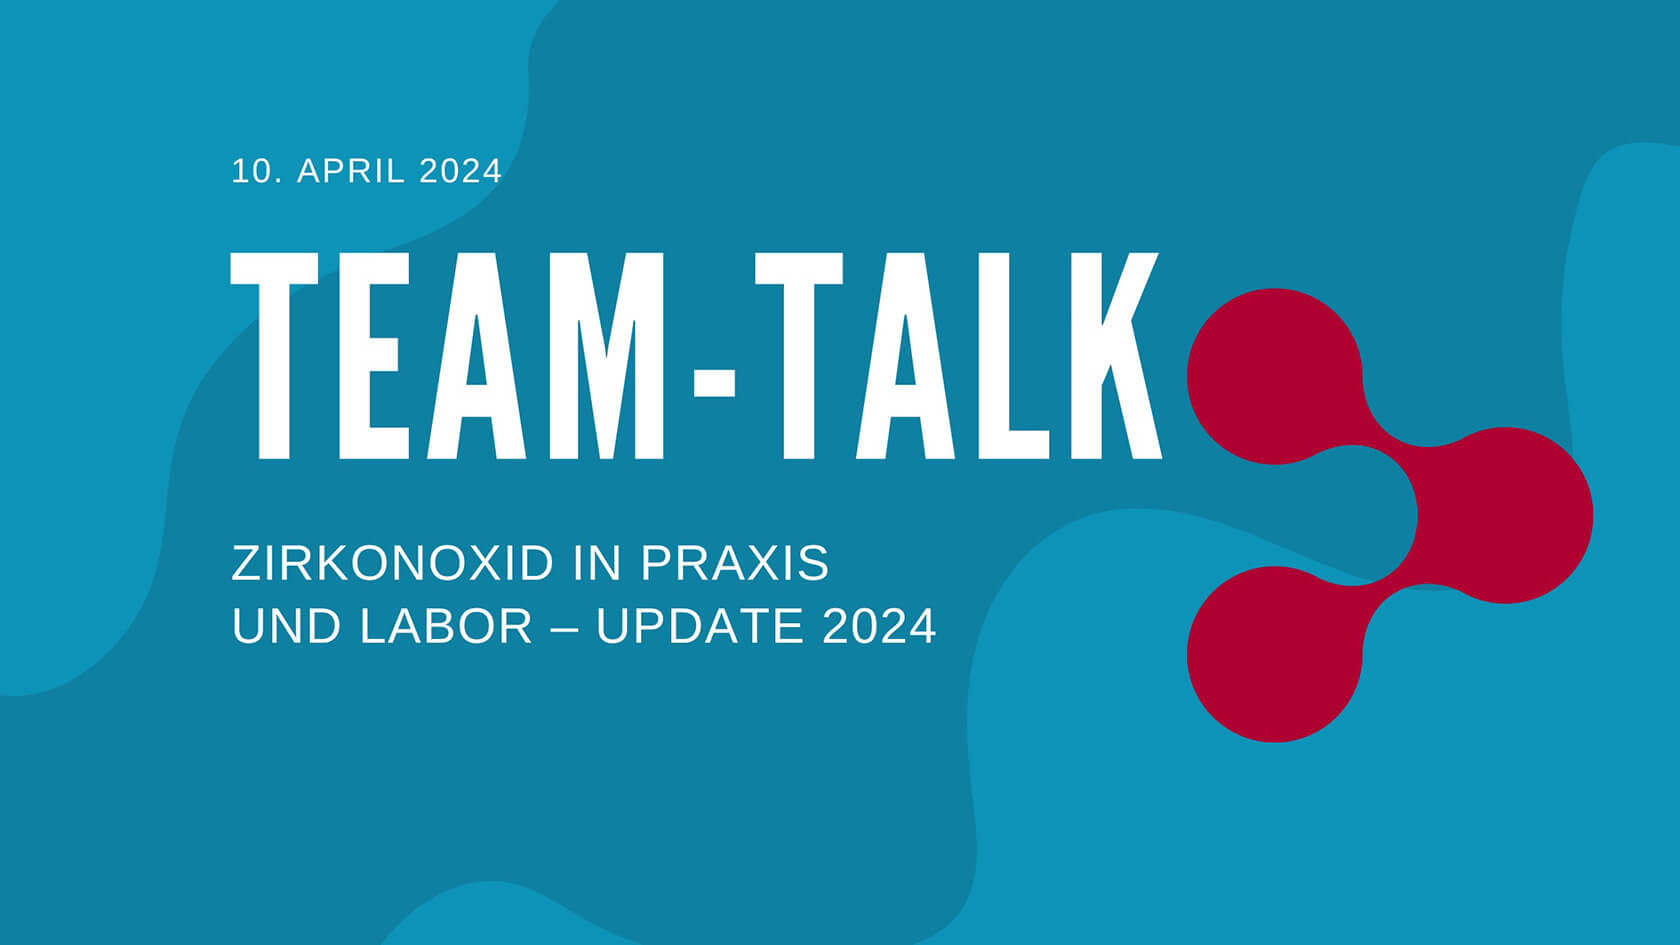 TEAM-Talk #6: Zirkonoxid in Praxis und Labor – Update 2024